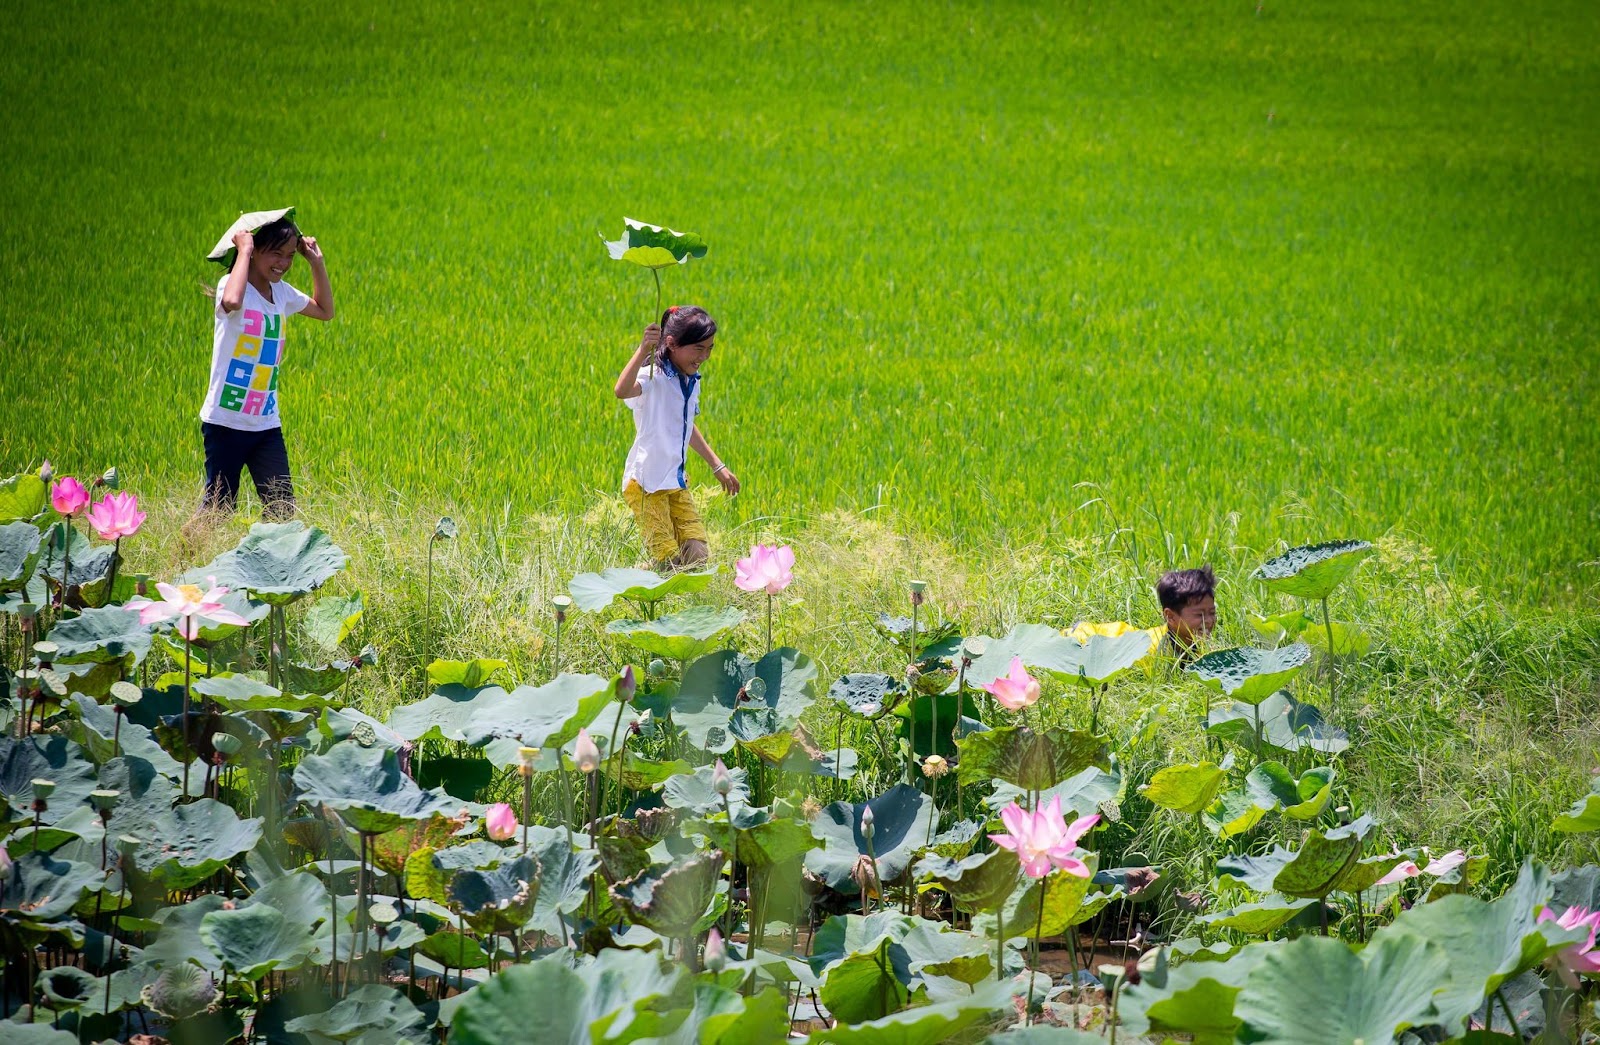 Hoa sen có vai trò, vị trí đặc biệt trong đời sống và văn hóa của người Việt.